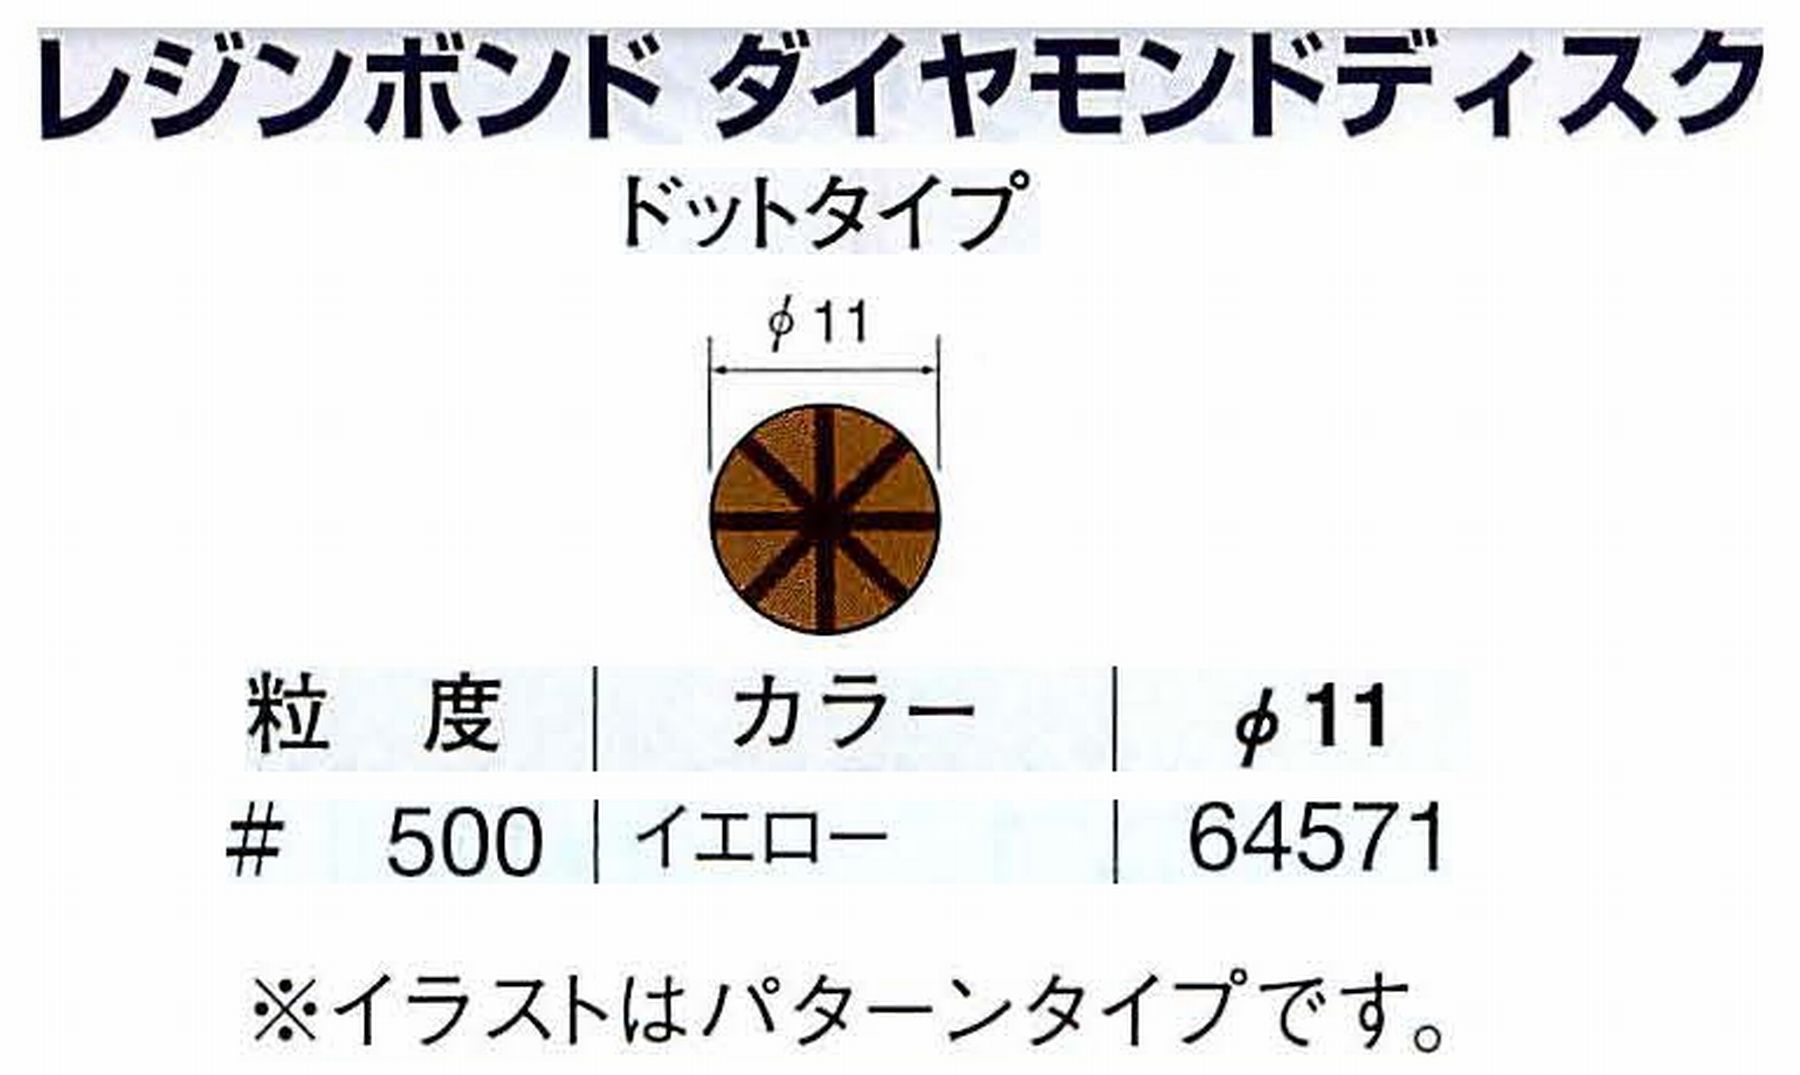 ナカニシ/NAKANISHI アングルグラインダ(電動・エアー) アングルアタッチメント専用工具 レジンボンド ダイヤモンドディスク(ドットタイプ) 64571